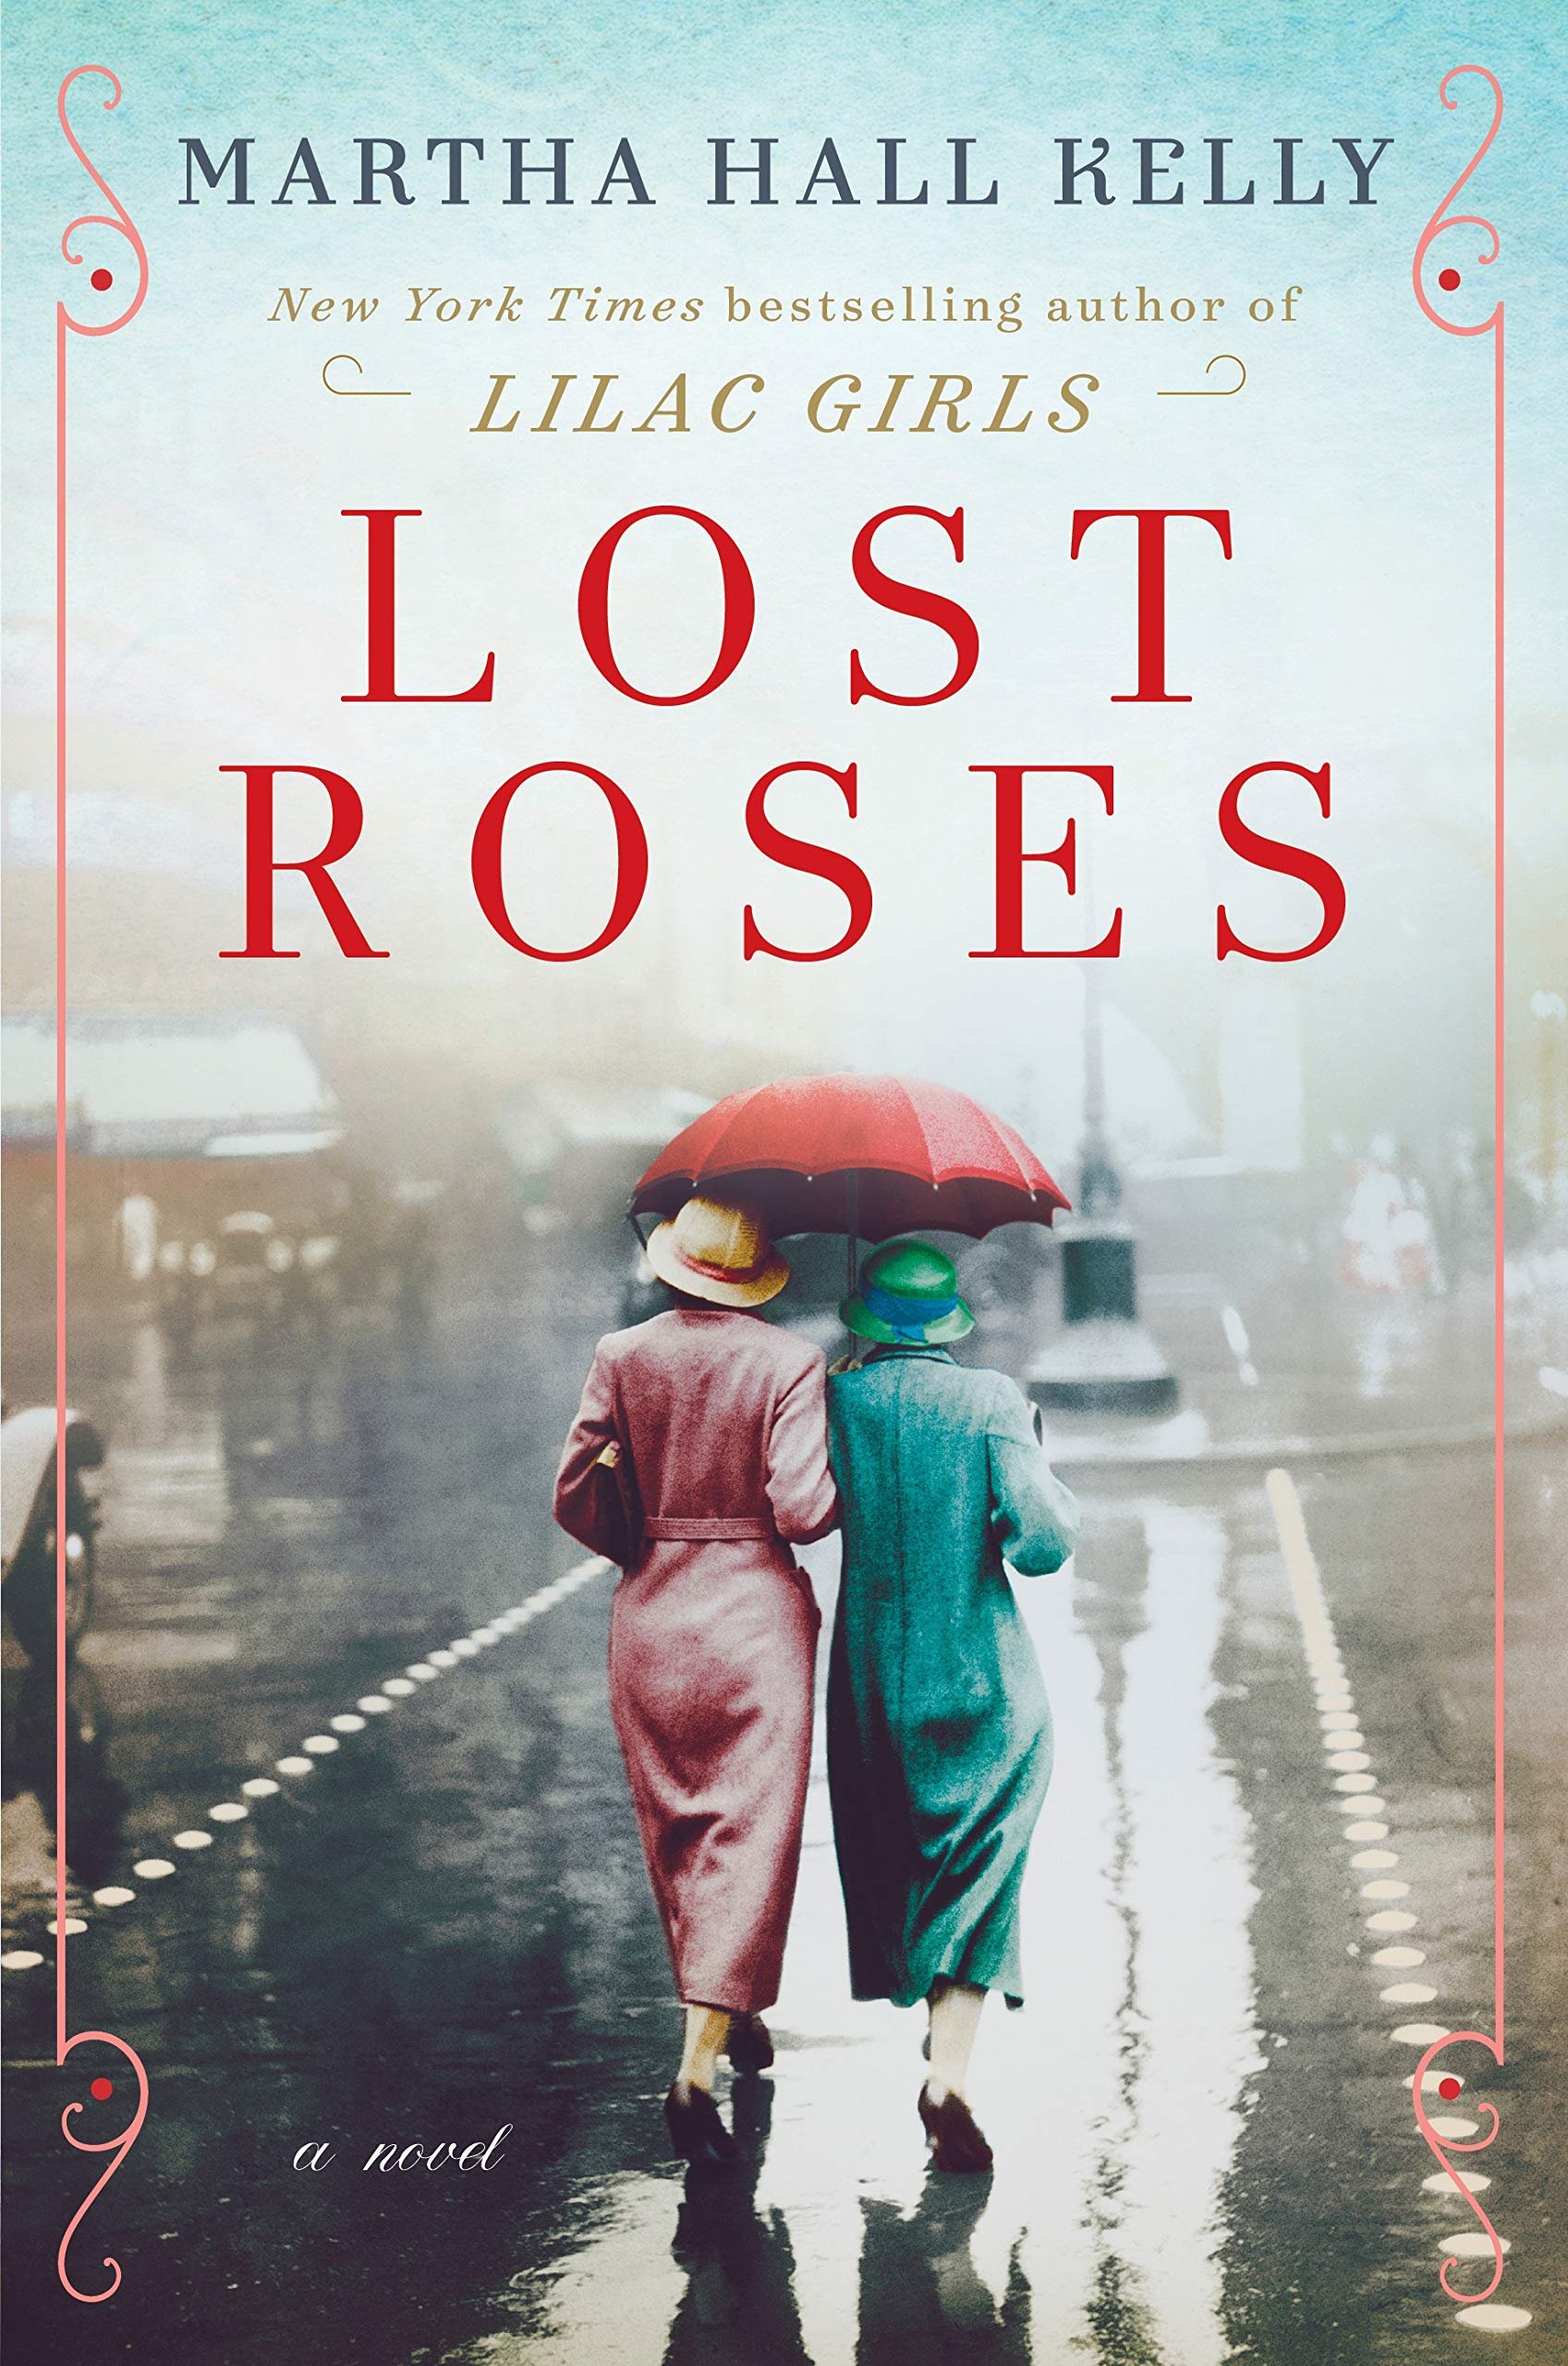 lost roses by martha hall kelly.jpg